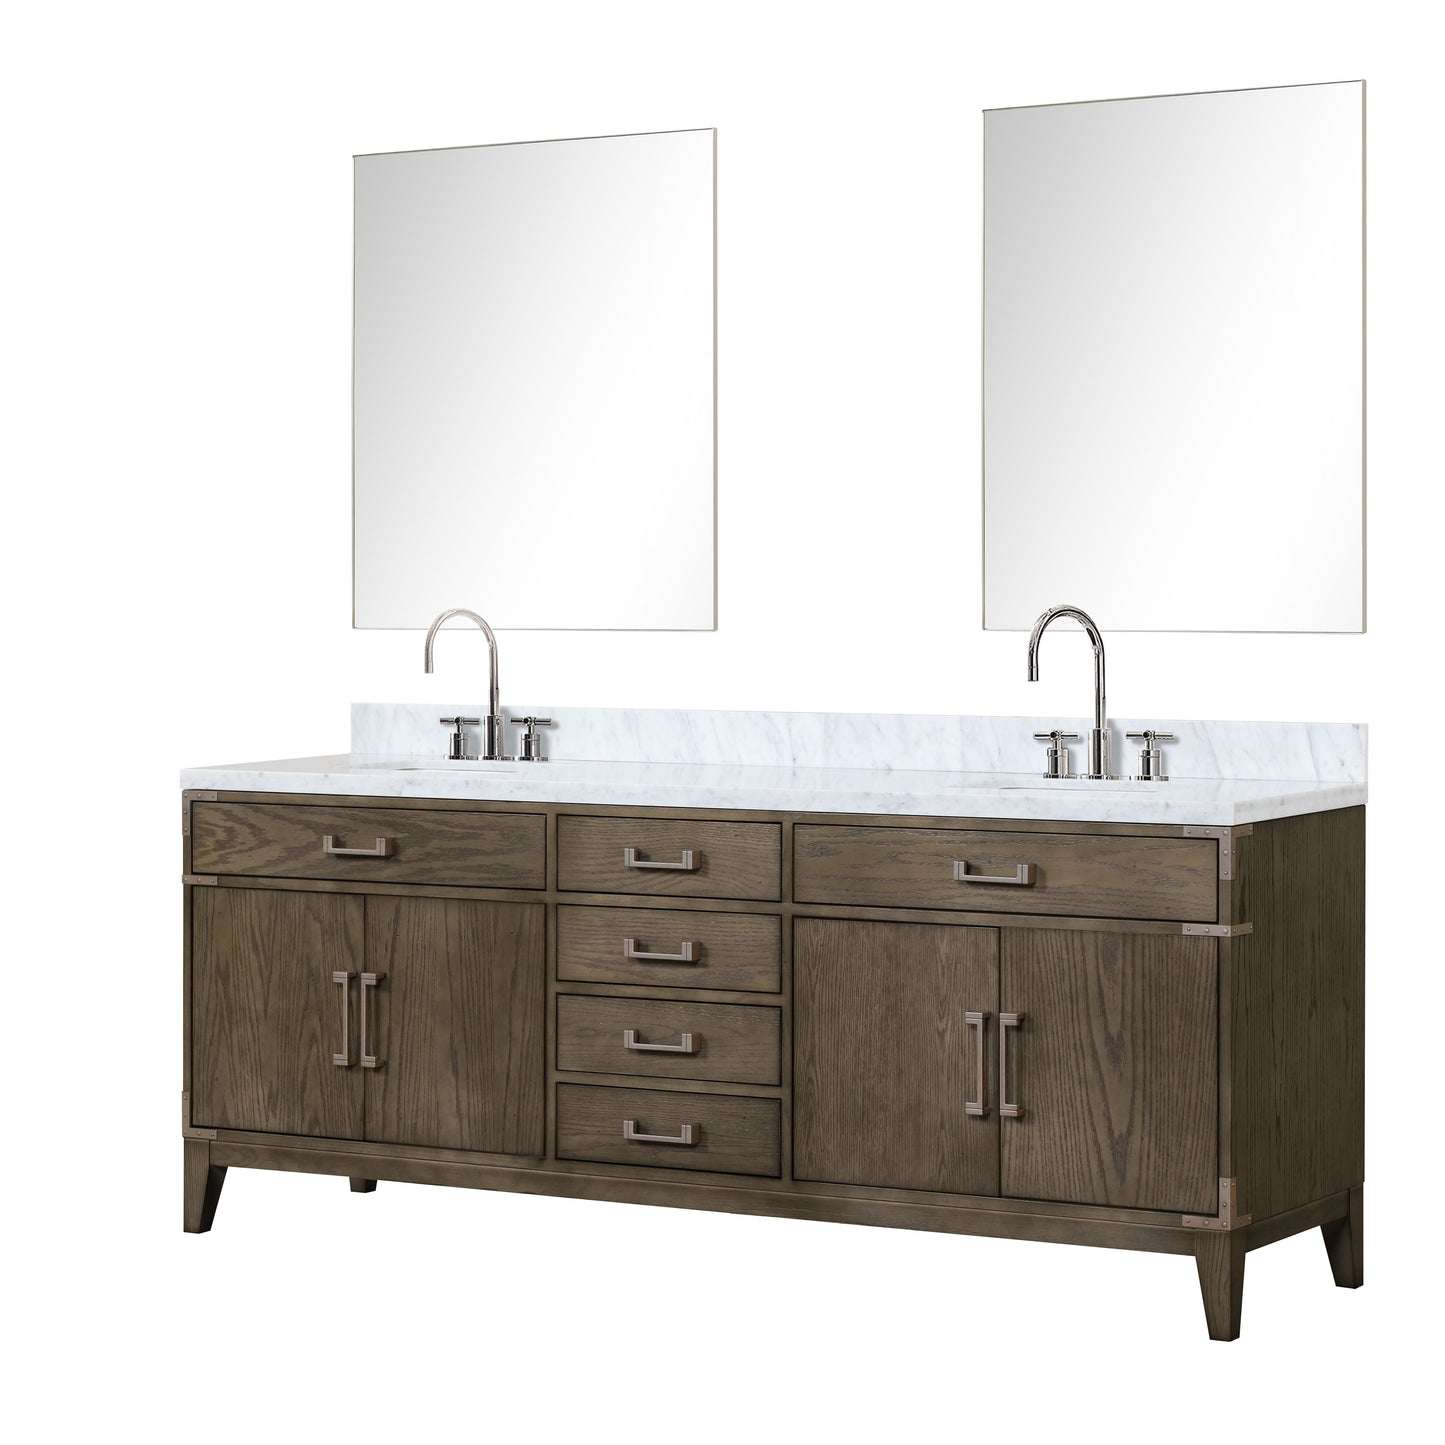 Lexora Collection Laurel 84 inch Double Bath Vanity and Carrara Marble Top - Luxe Bathroom Vanities